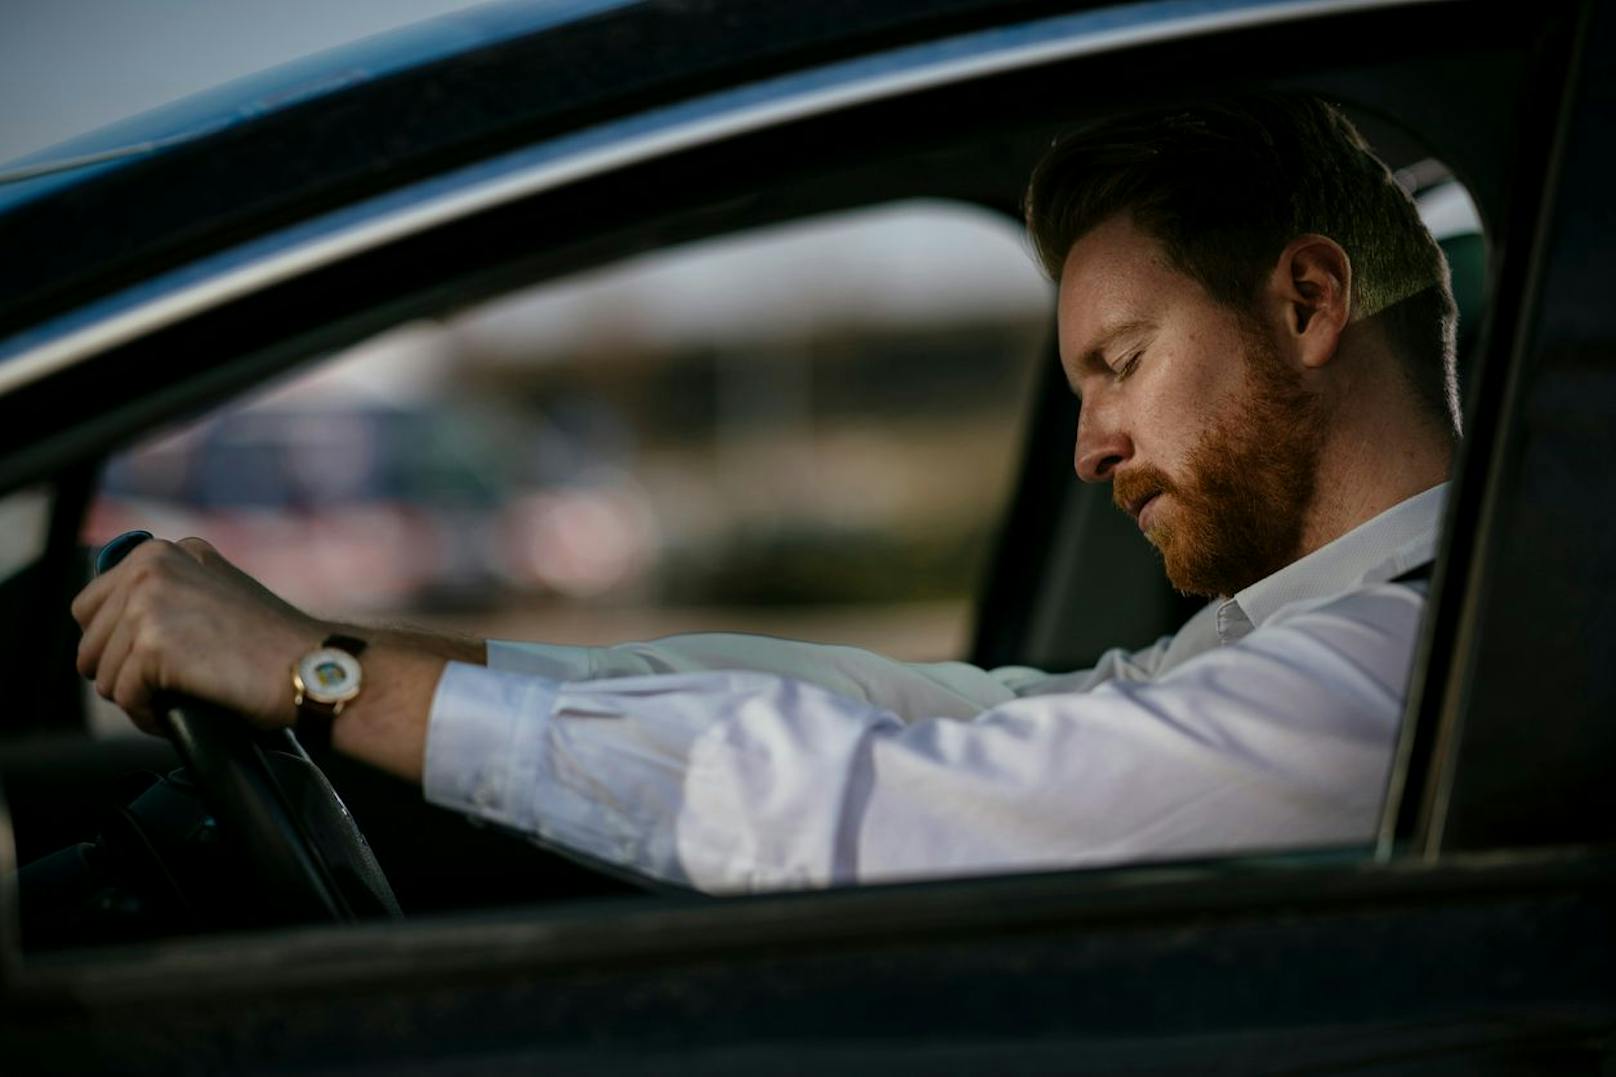 Neue Erkenntnisse deuten darauf hin, dass das Fahren mit weniger als fünf Stunden Schlaf genauso gefährlich ist wie das Überschreiten der gesetzlichen Promillegrenze. (Symbolbild).